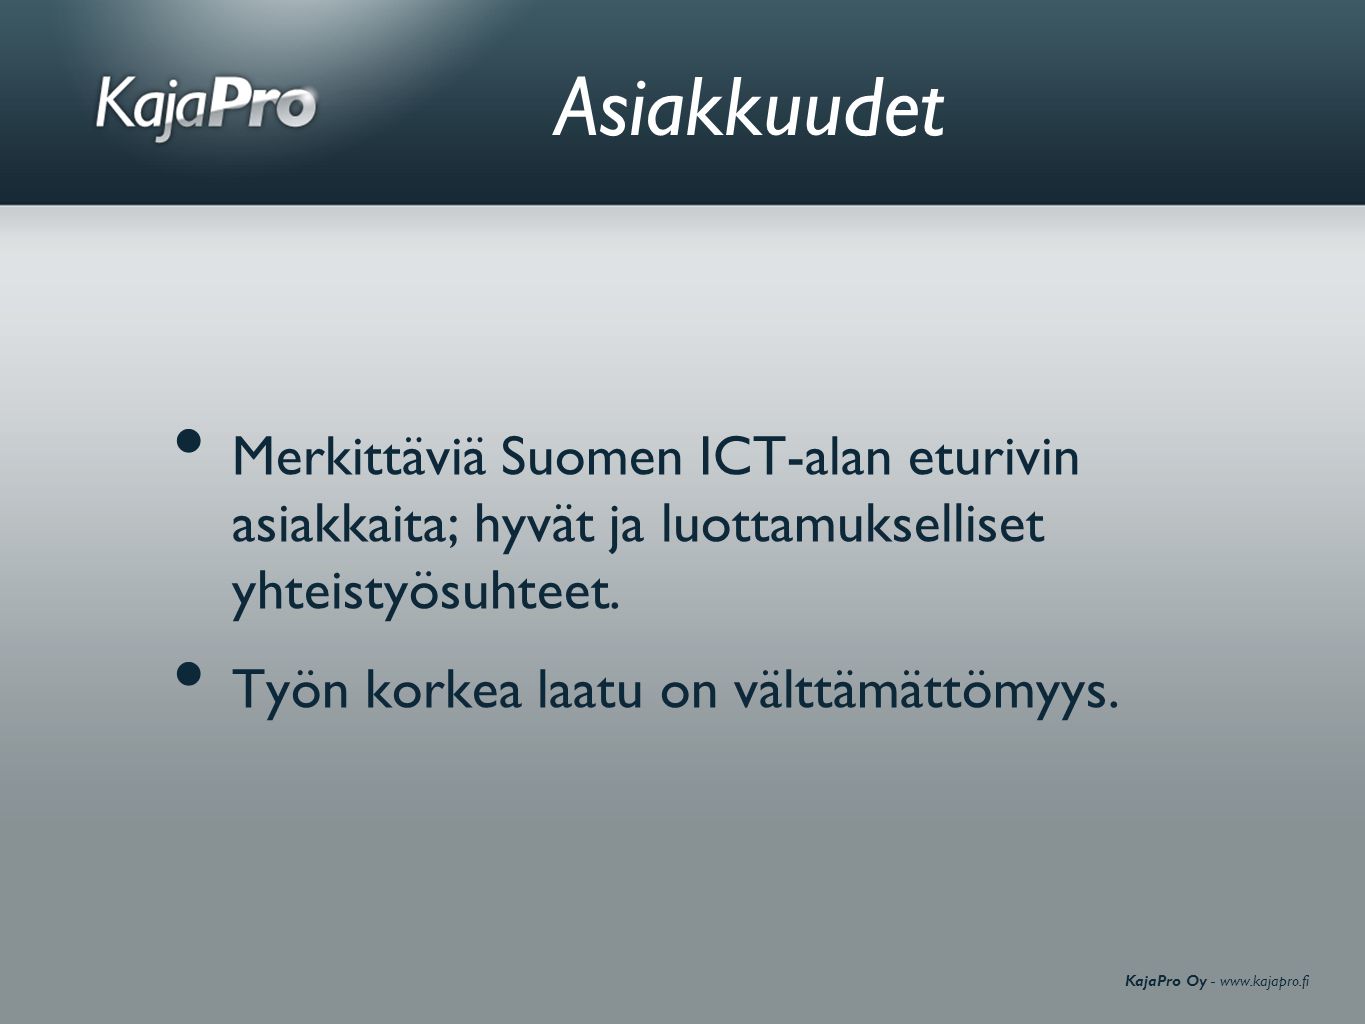 KajaPro Oy -   Asiakkuudet • Merkittäviä Suomen ICT-alan eturivin asiakkaita; hyvät ja luottamukselliset yhteistyösuhteet.